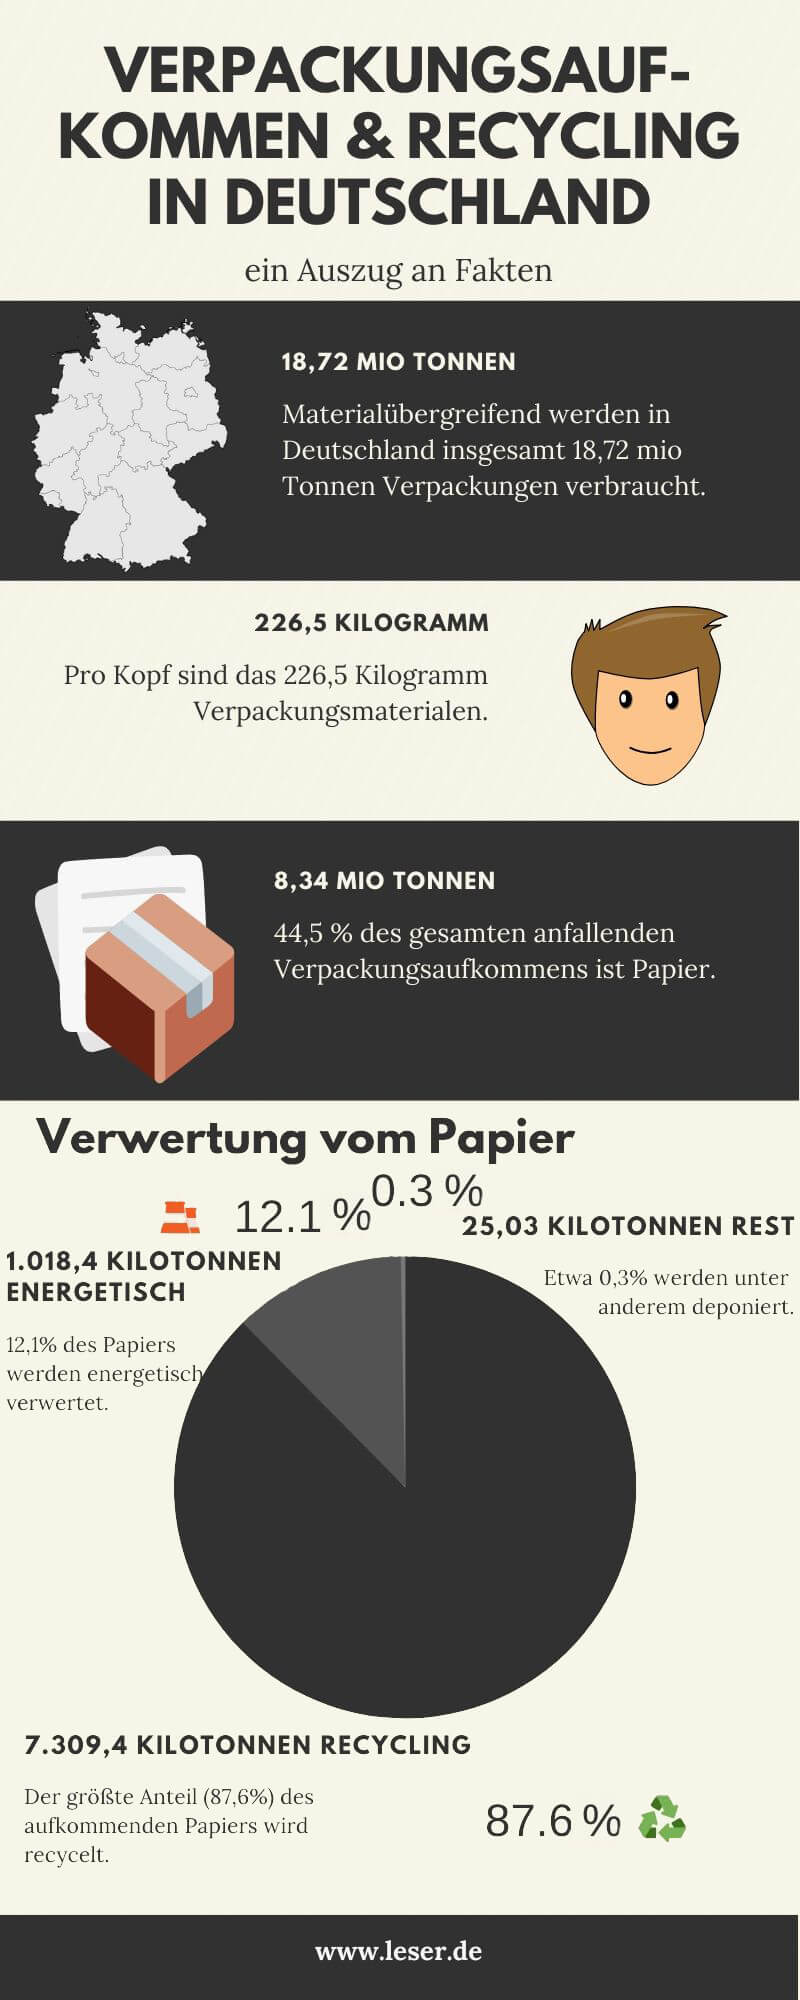 Infografik zum Verpackungsaufkommen in Deutschland und dem Recycling von Papier